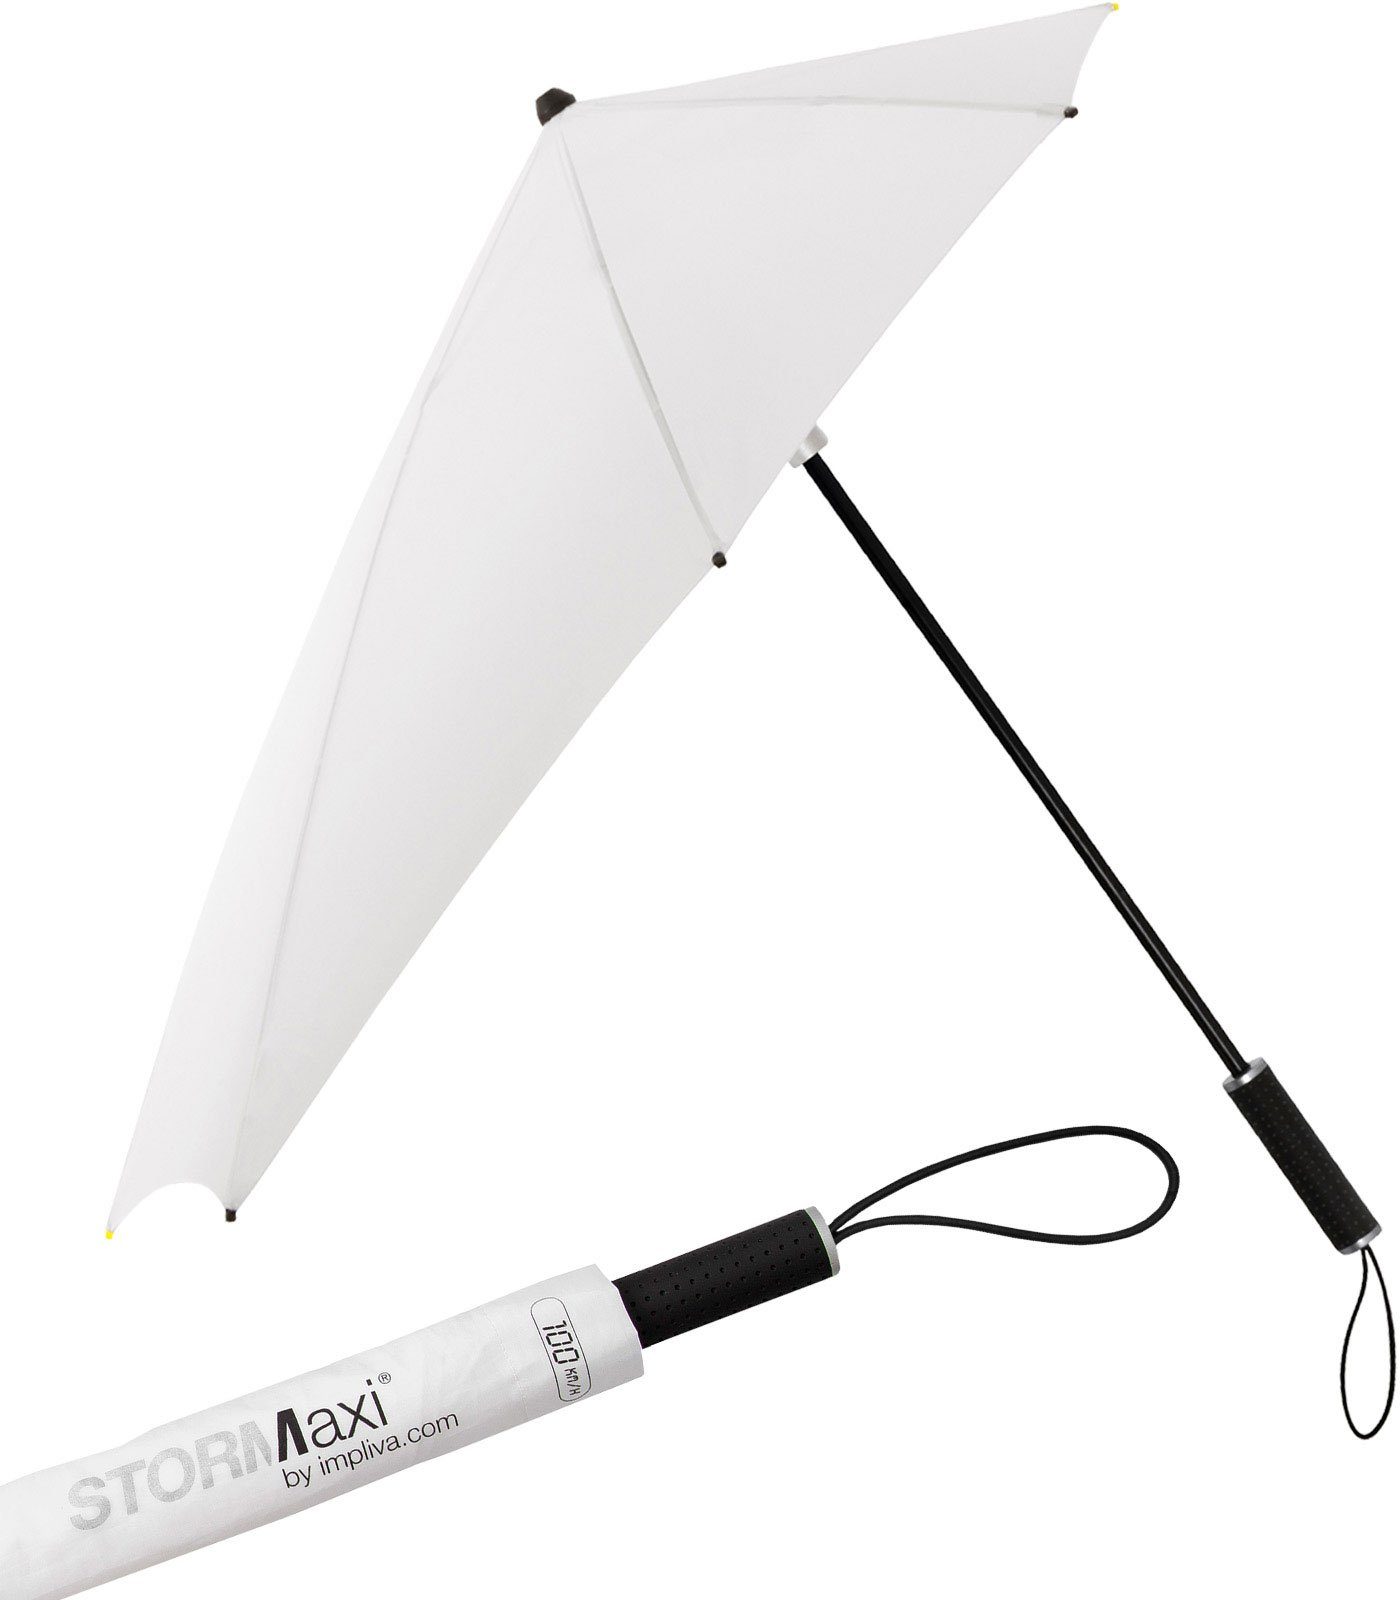 Impliva Stockregenschirm STORMaxi Sturmschirm aerodynamischer Regenschirm, durch seine besondere Form dreht sich der Schirm in den Wind, hält bis zu 100 km/h aus weiß